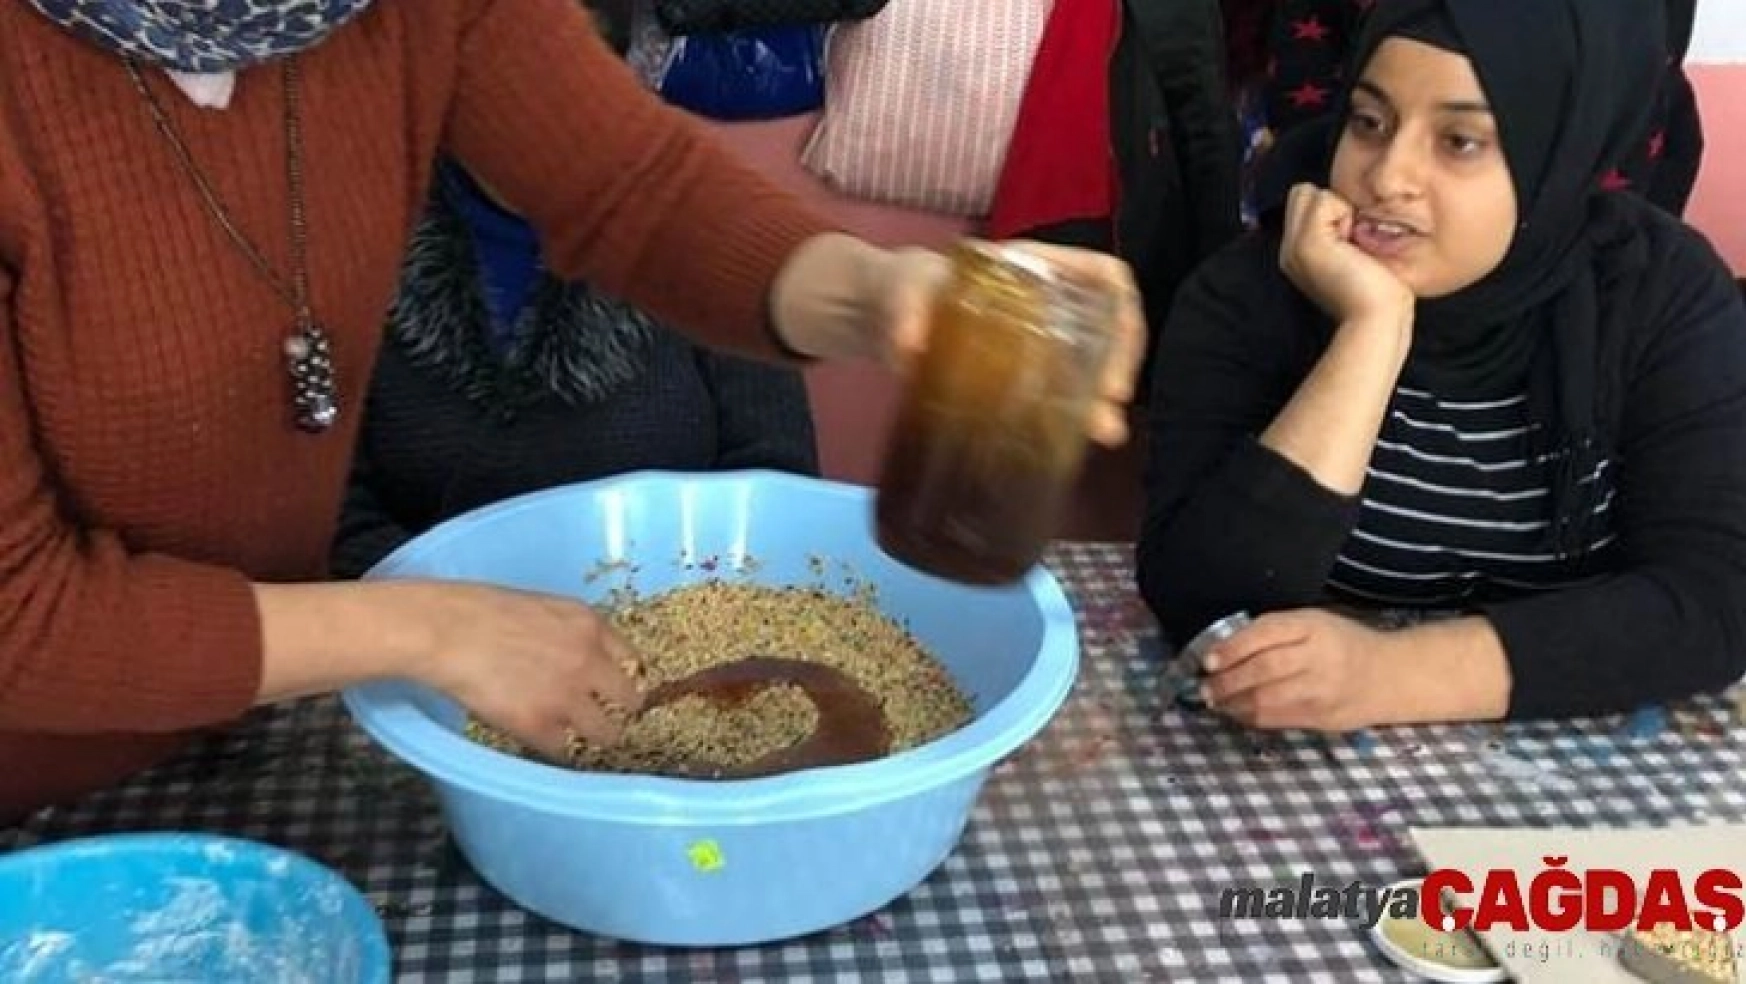 Burhaniye'de özel öğrenciler kuşlar için yem hazırladı